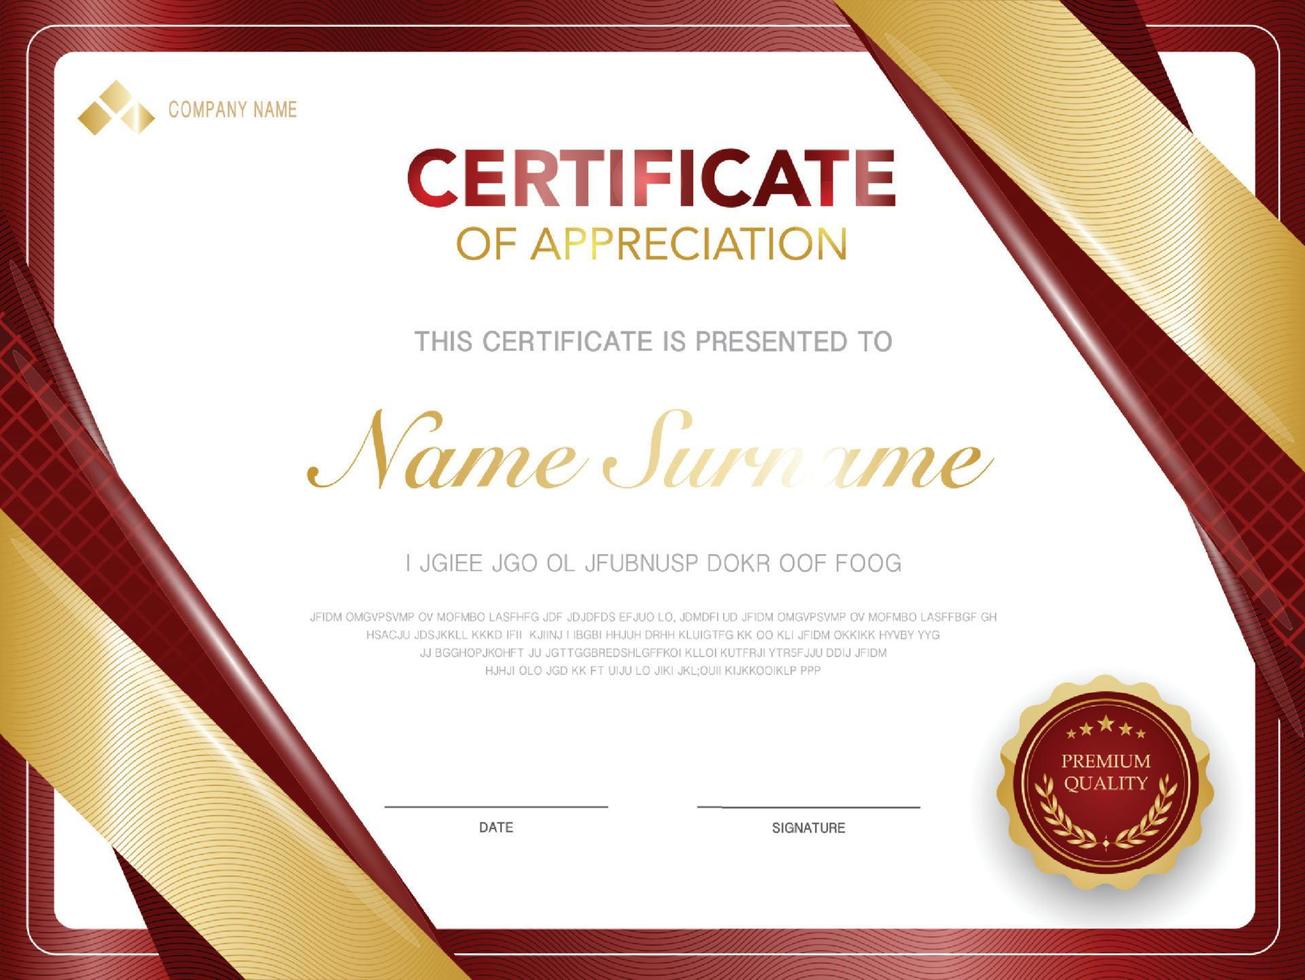 modello di certificato di diploma colore rosso e oro con immagine vettoriale di lusso e stile moderno